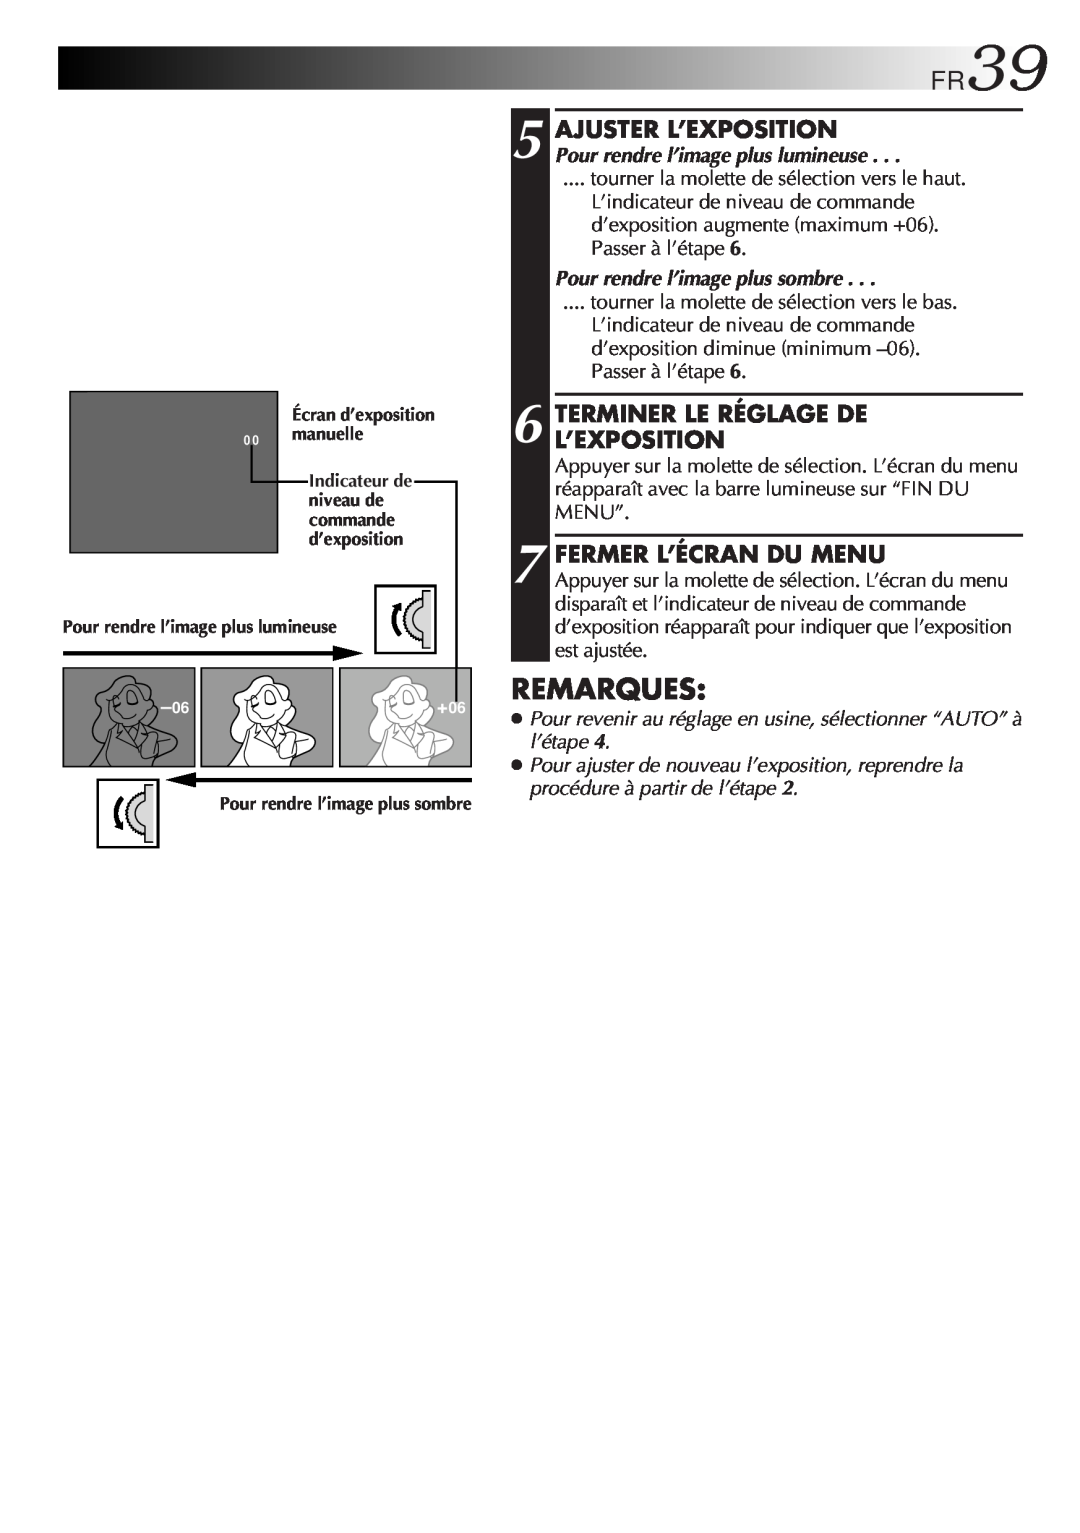 JVC GR-FXM106S manual FR39, Remarques, Terminer Le Réglage De L’Exposition, Fermer L’Écran Du Menu 